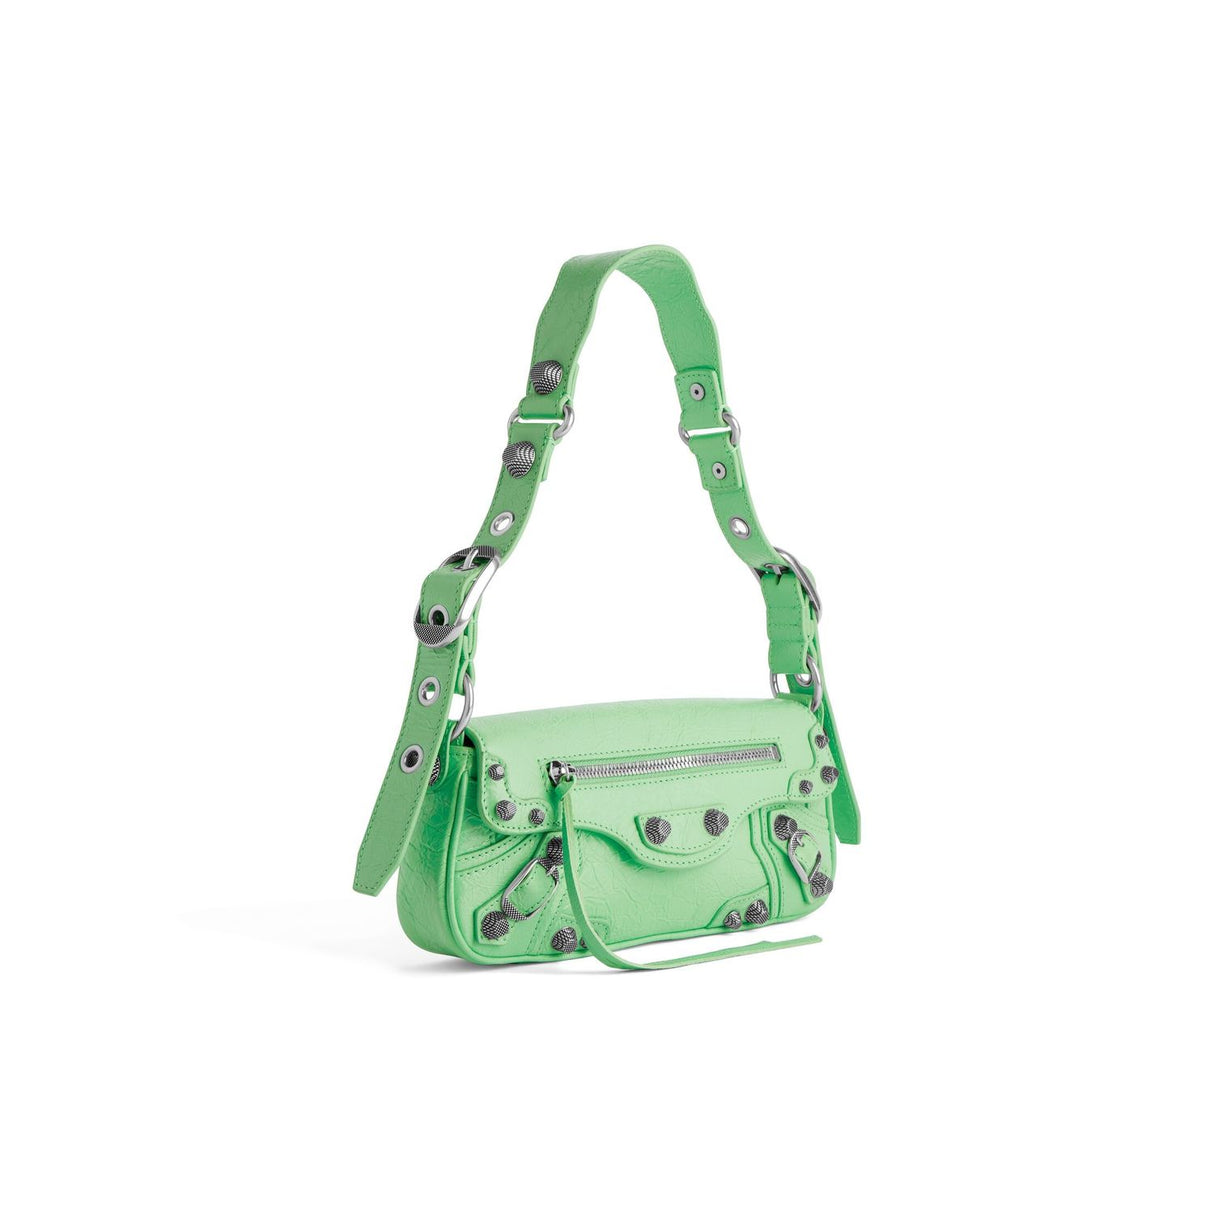 حقيبة كتف باللون الأخضر للنساء - حقيبة بطول الكتف مصنوعة من الجلد للموسم الربيع/الصيف 24 من بالنسياجا